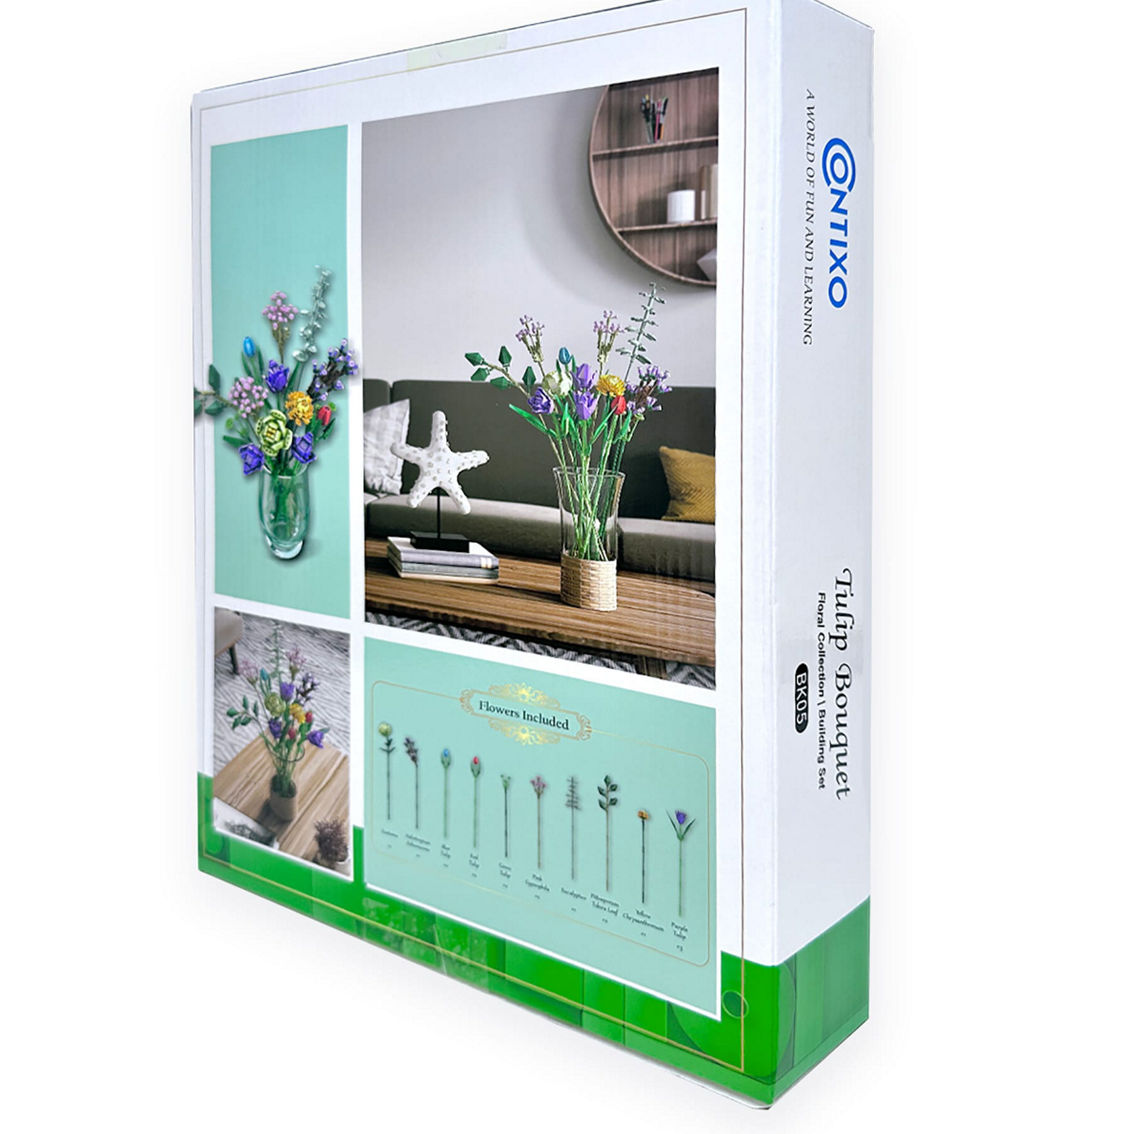 Contixo BK05 Tulip Bouquet Floral Collection Building Block Set - Image 3 of 5